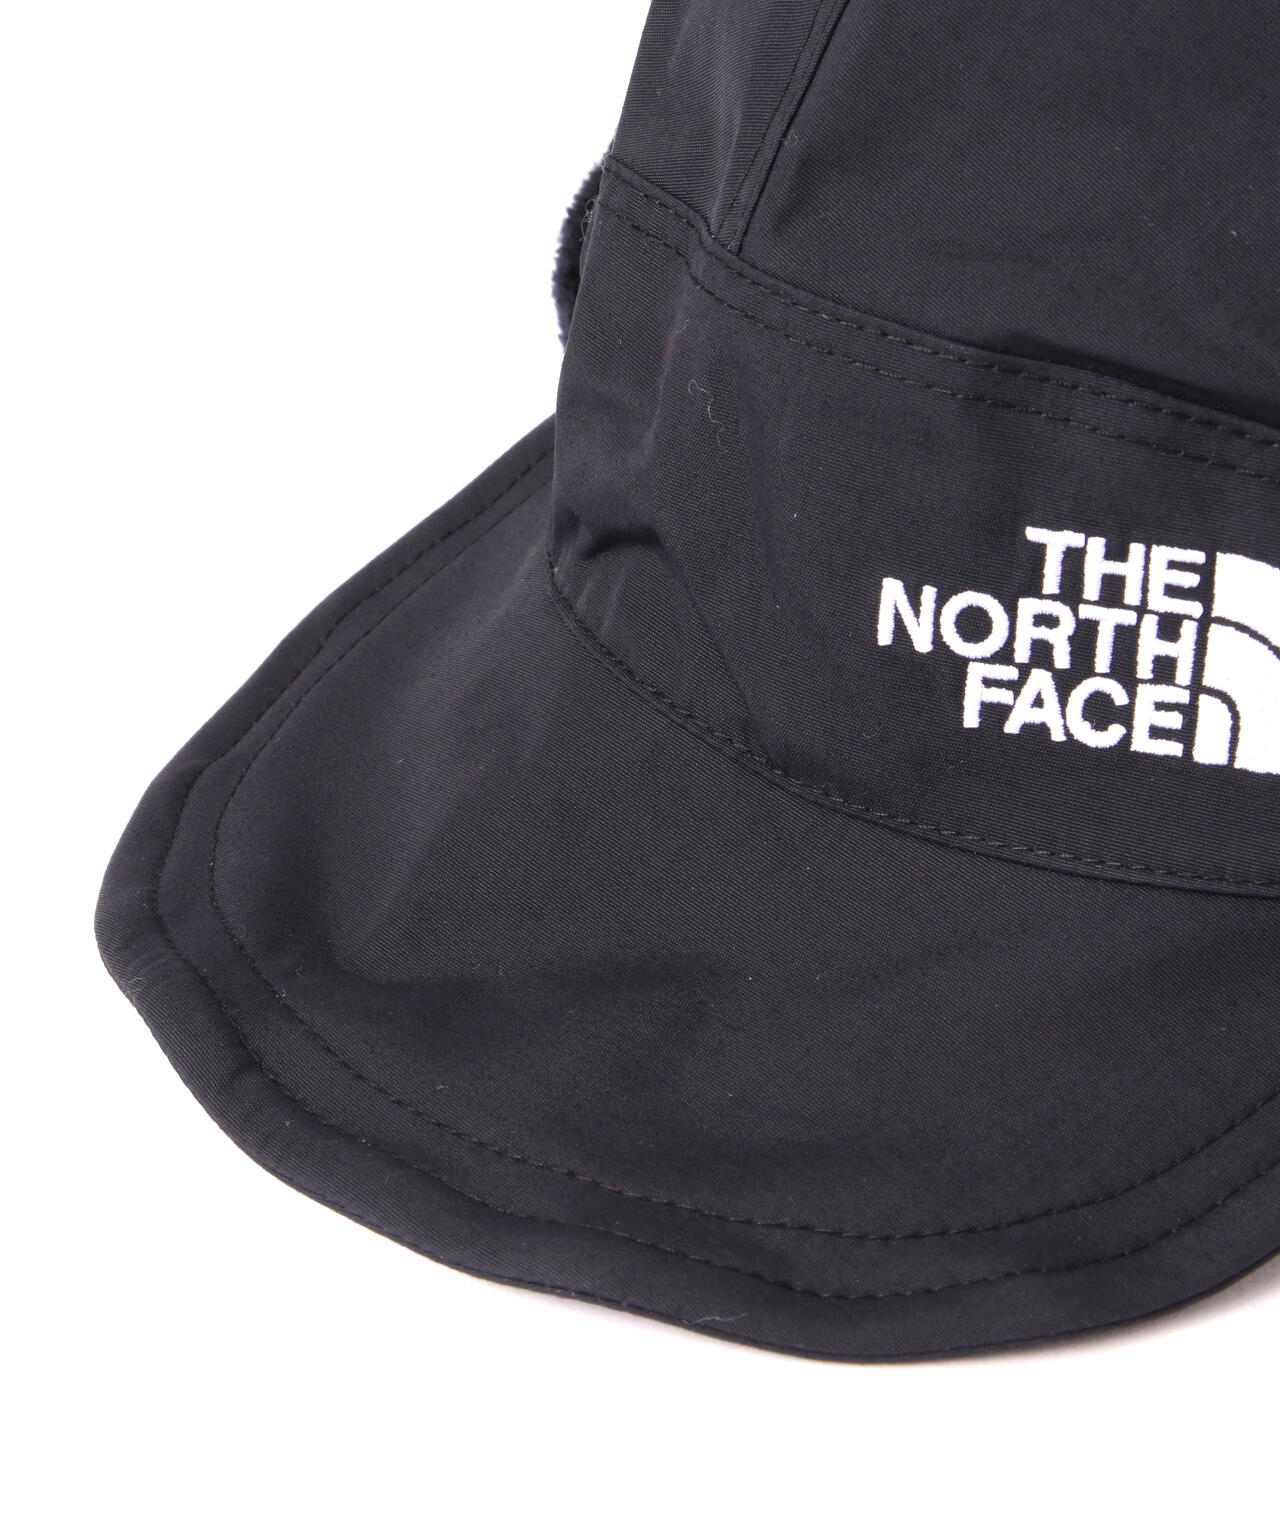 THE NORTH FACE/ザ・ノースフェイス/Expedition Cap/エクスペ 